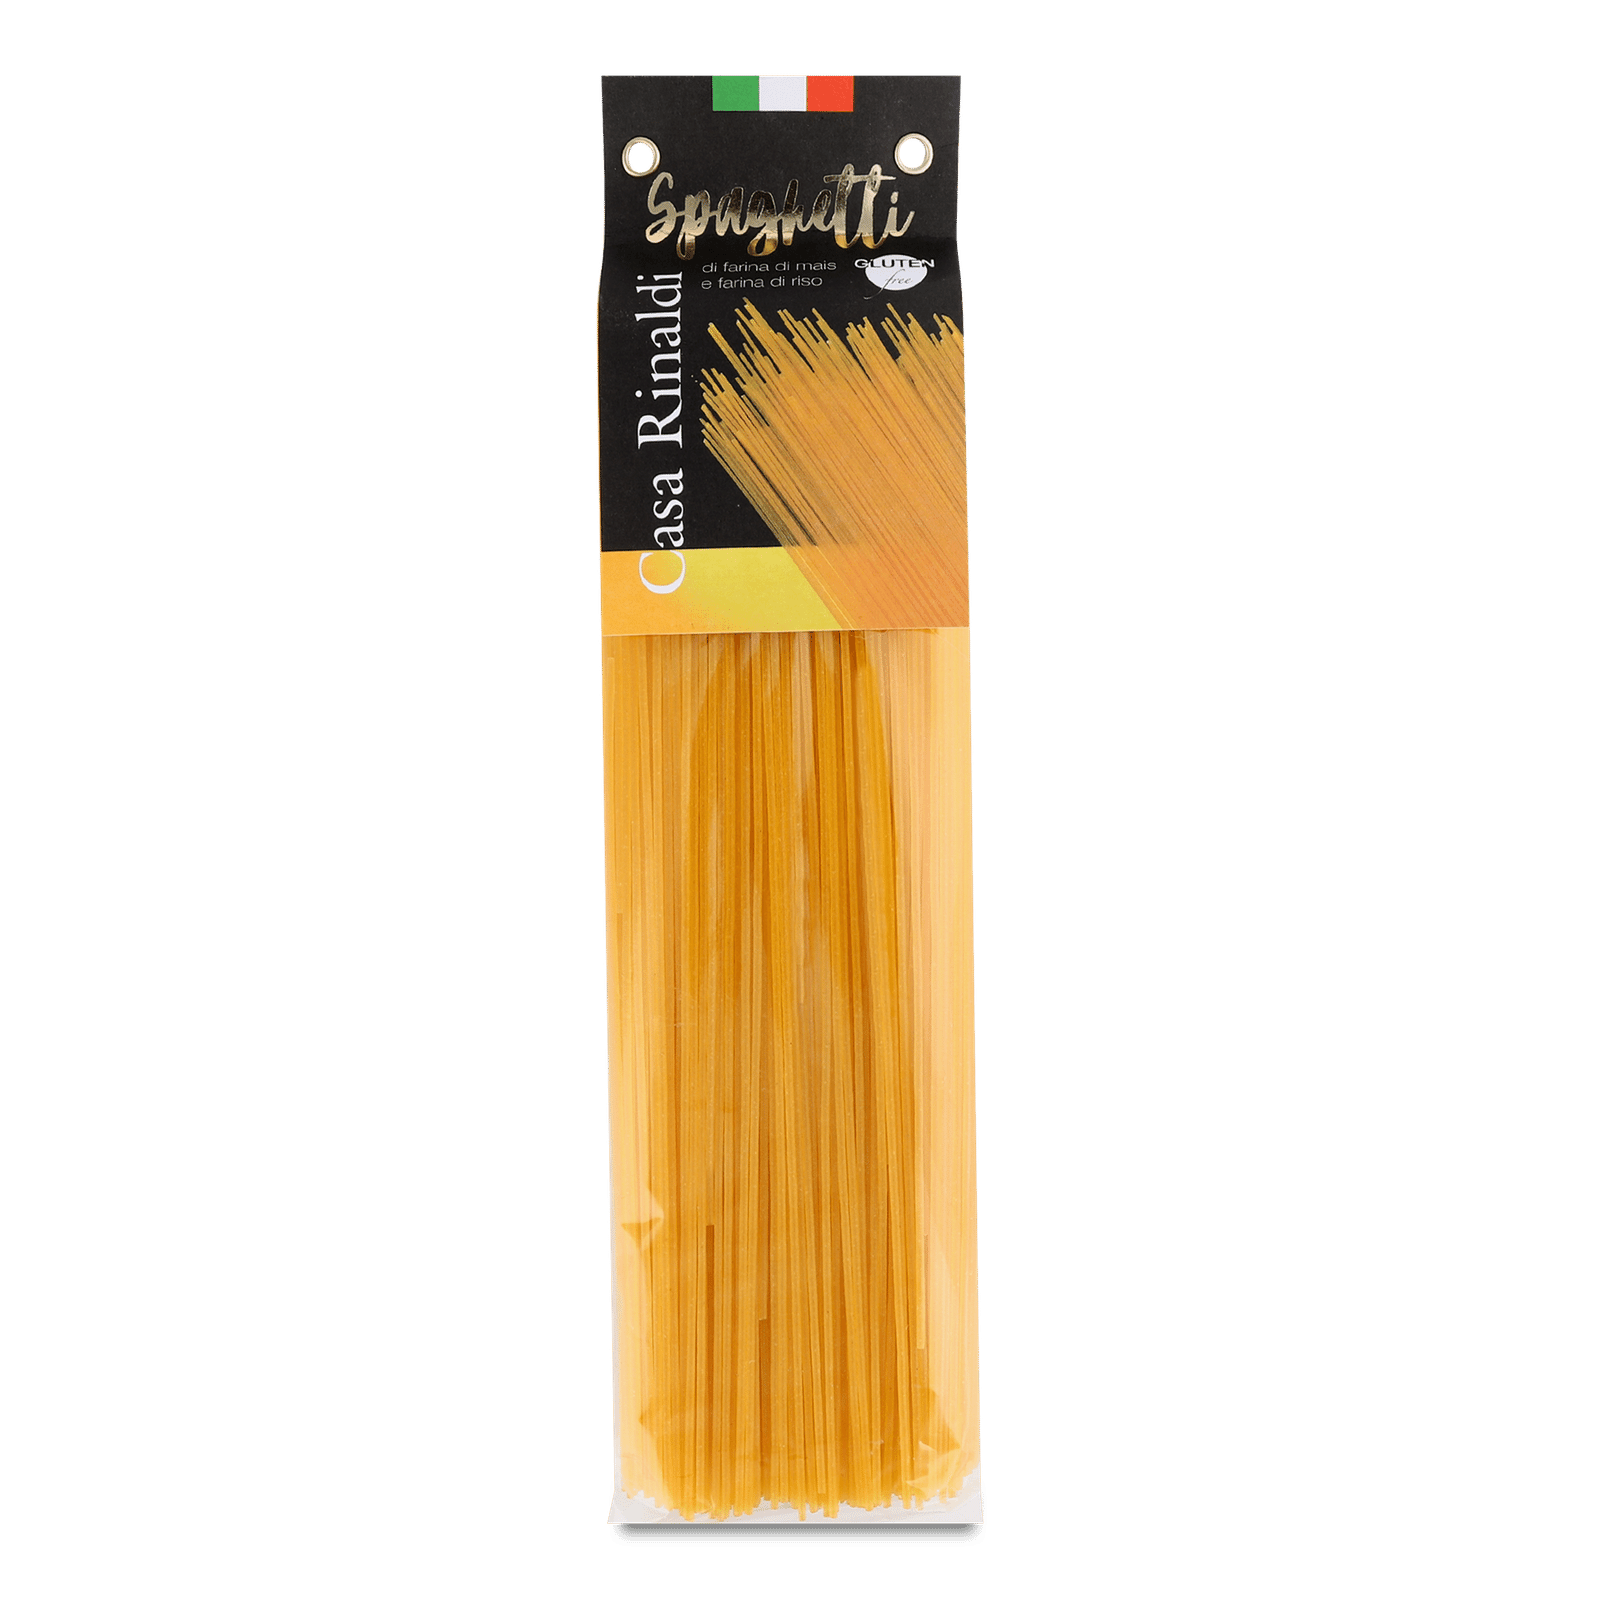 Вироби макаронні Casa Rinaldi спагеті без глютена - 1